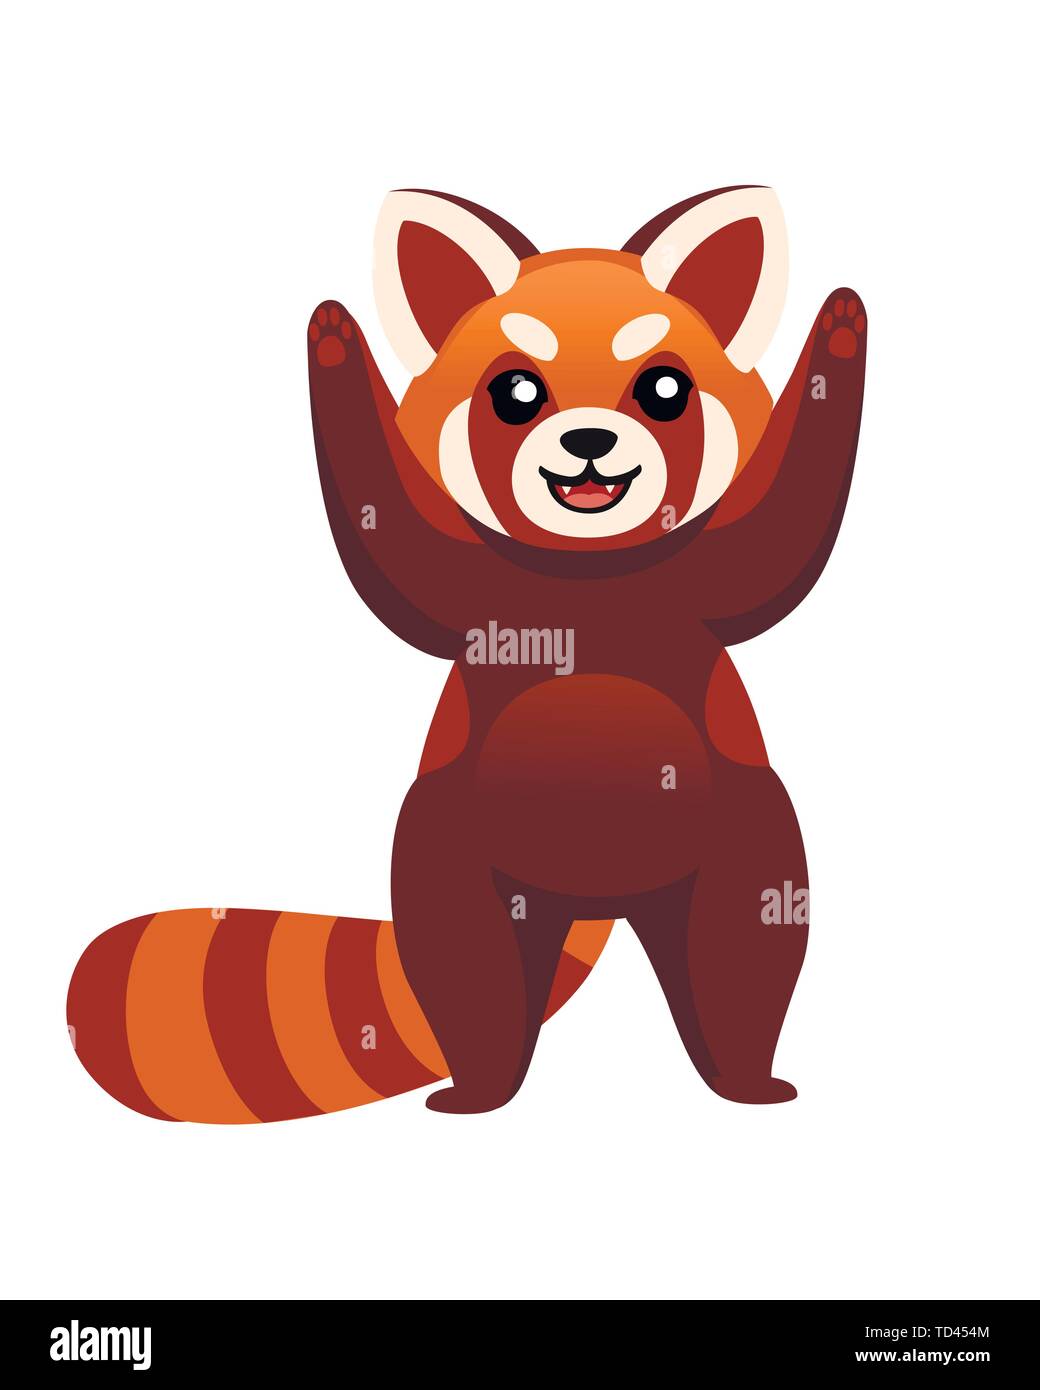 Cute adorable panda rouge hands up design dessin animé personnage animal  vecteur illustration style plat sur fond blanc Image Vectorielle Stock -  Alamy